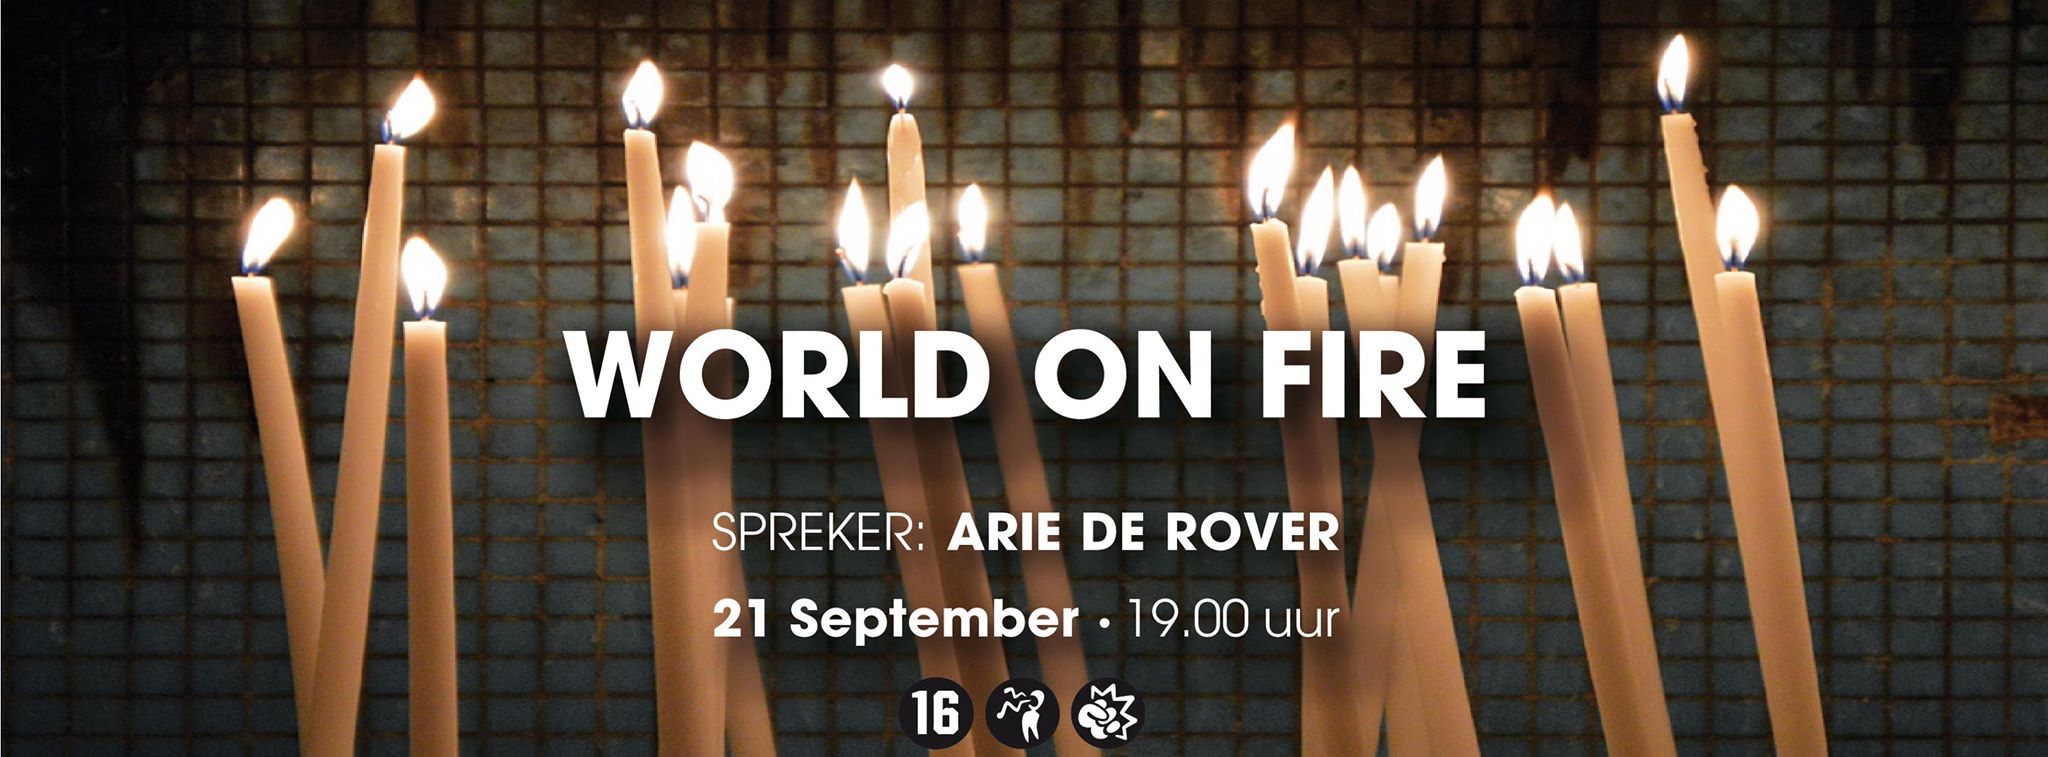 B.LOFT 21-09-2014 World on fire